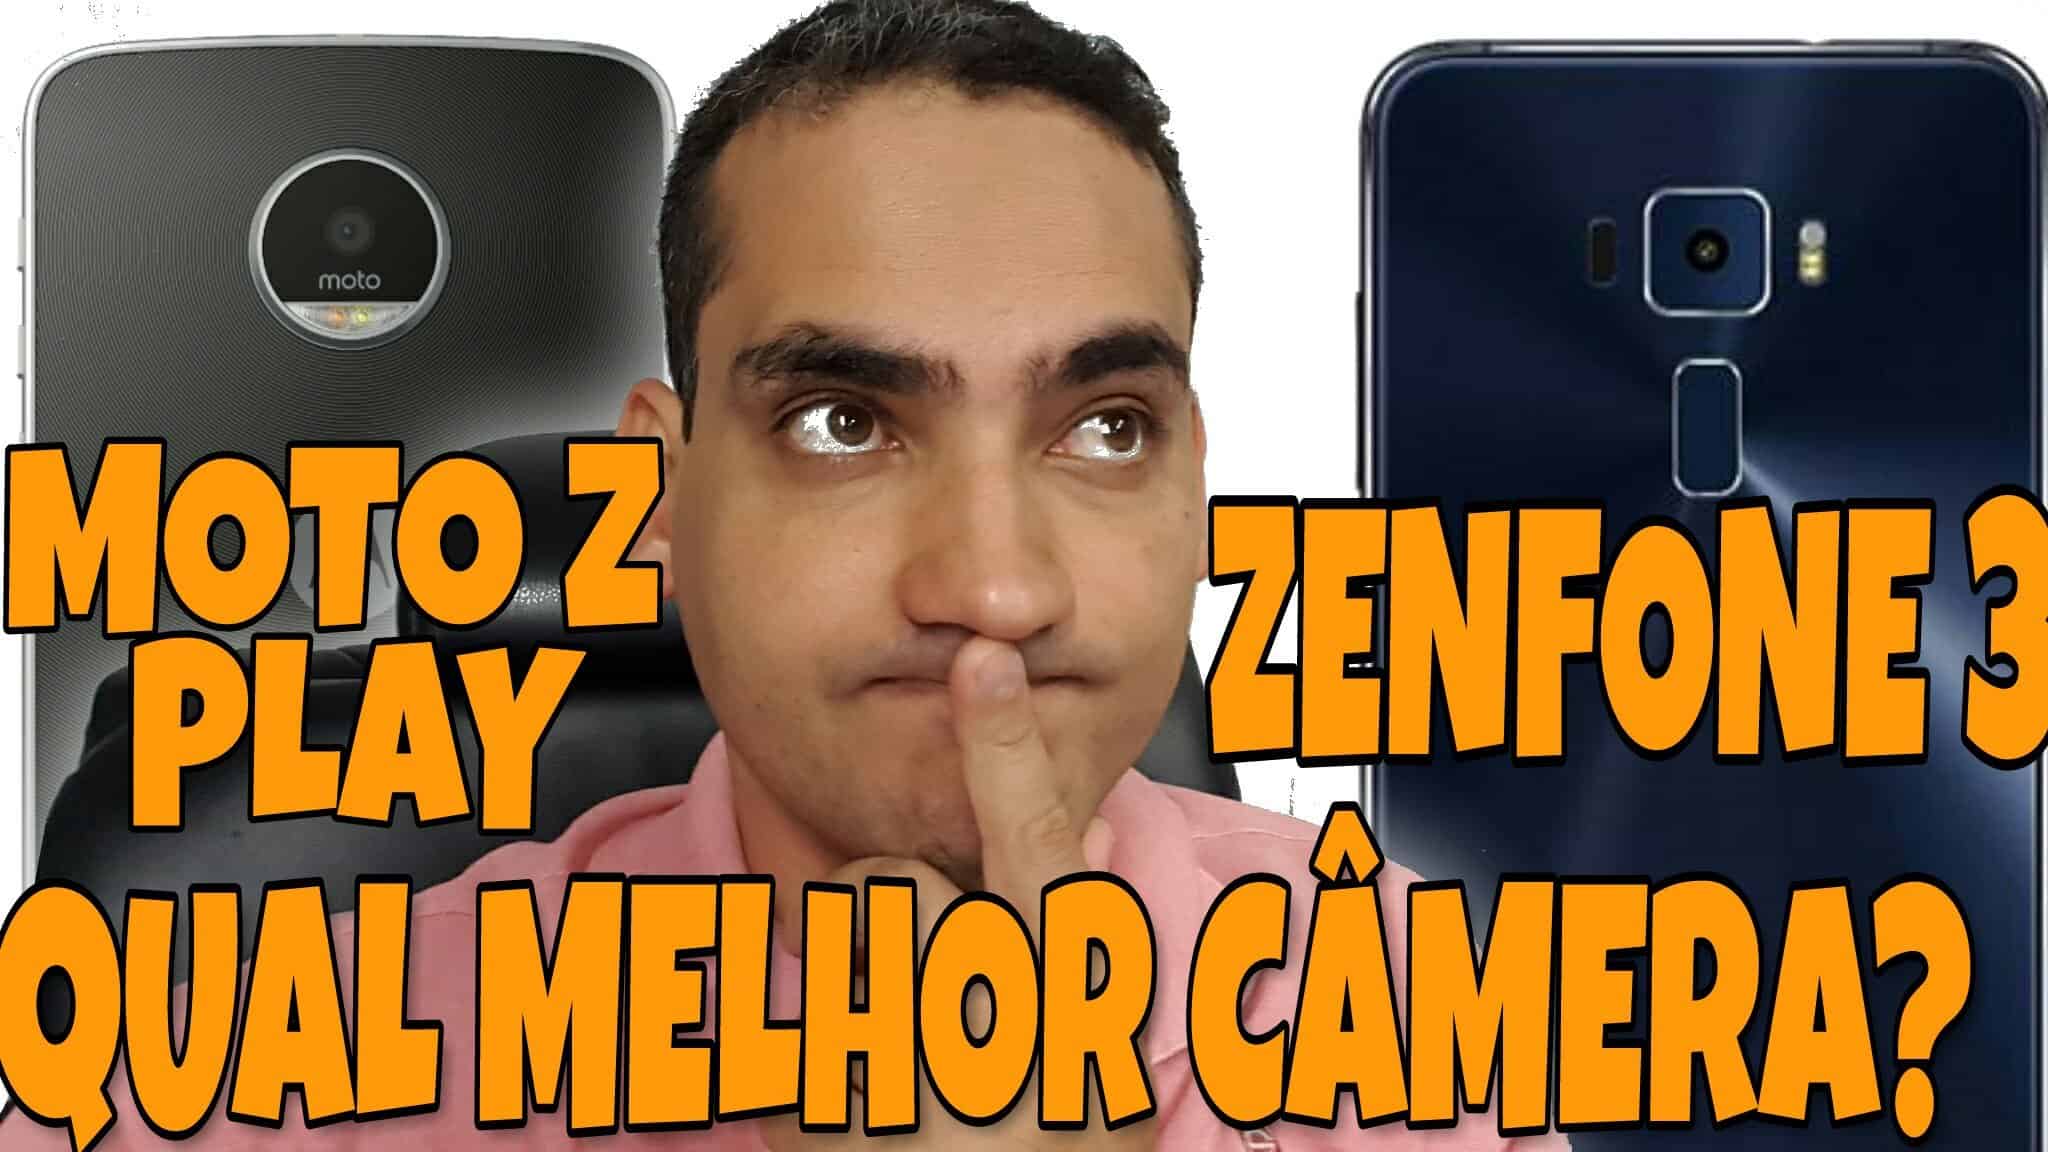 Zenfone 3 vs Moto Z Play: Quem tem a melhor câmera? 1